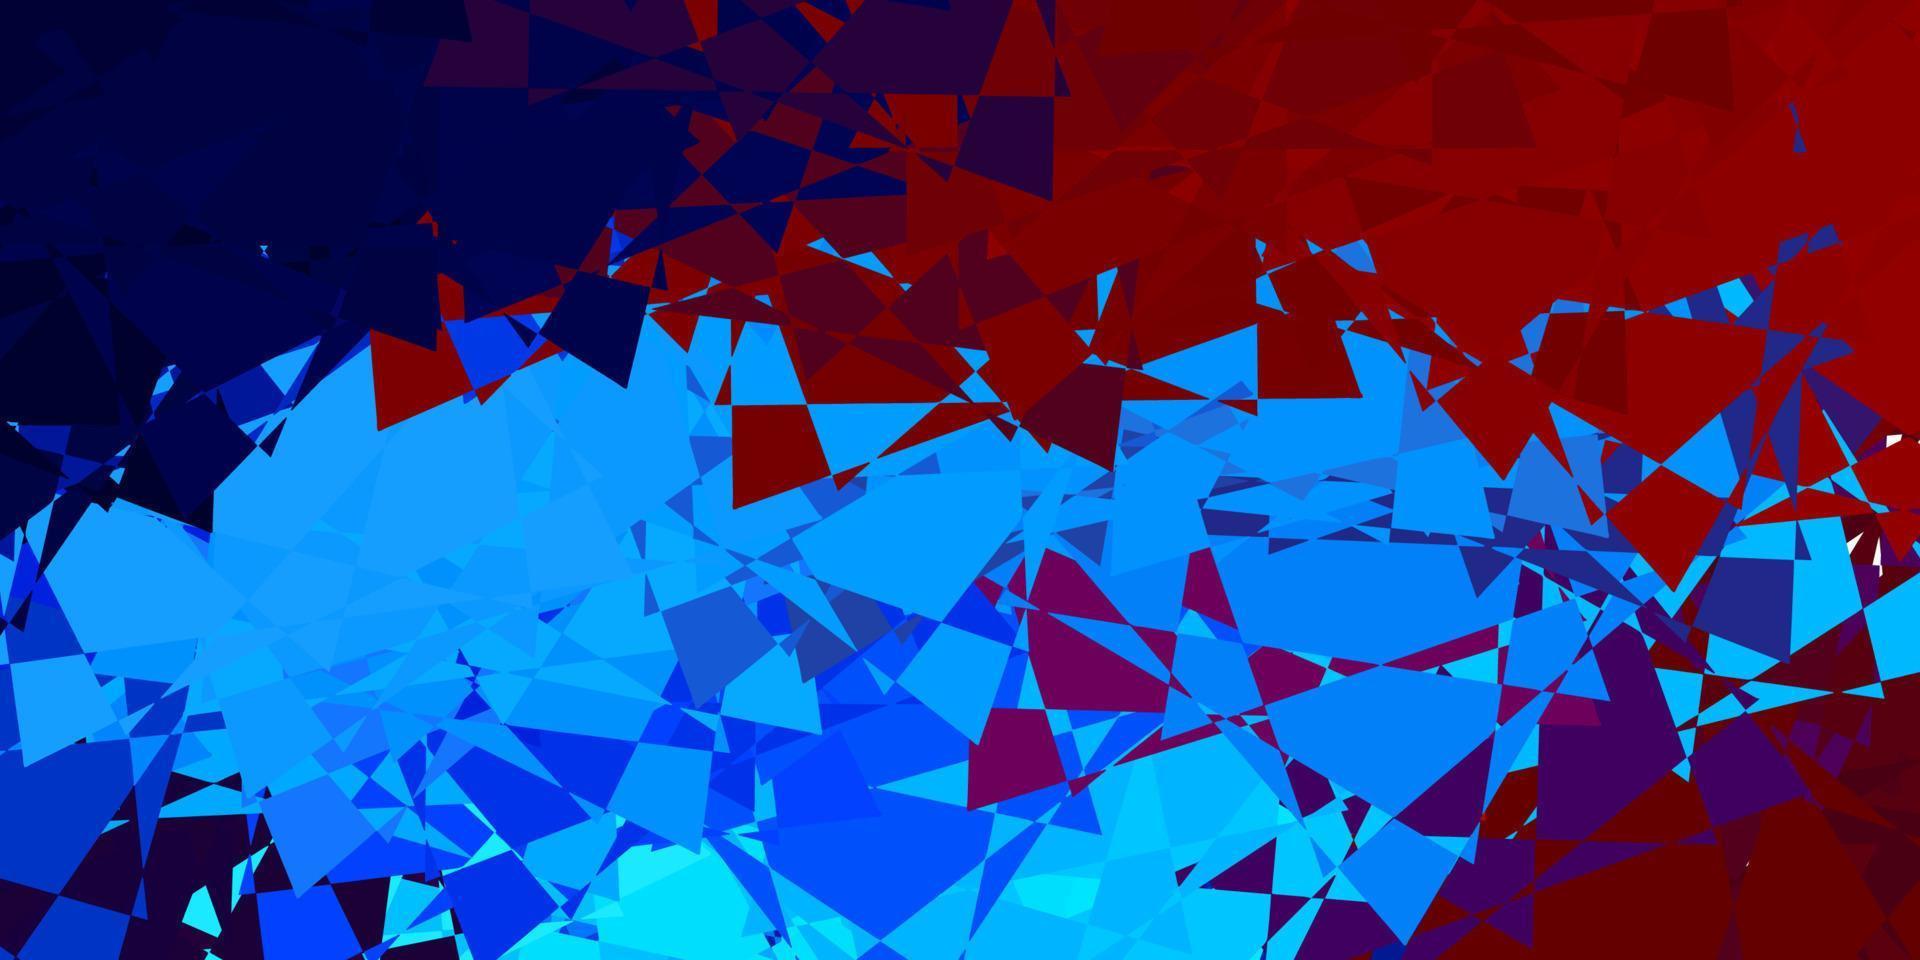 layout de vetor azul claro e vermelho com formas triangulares.